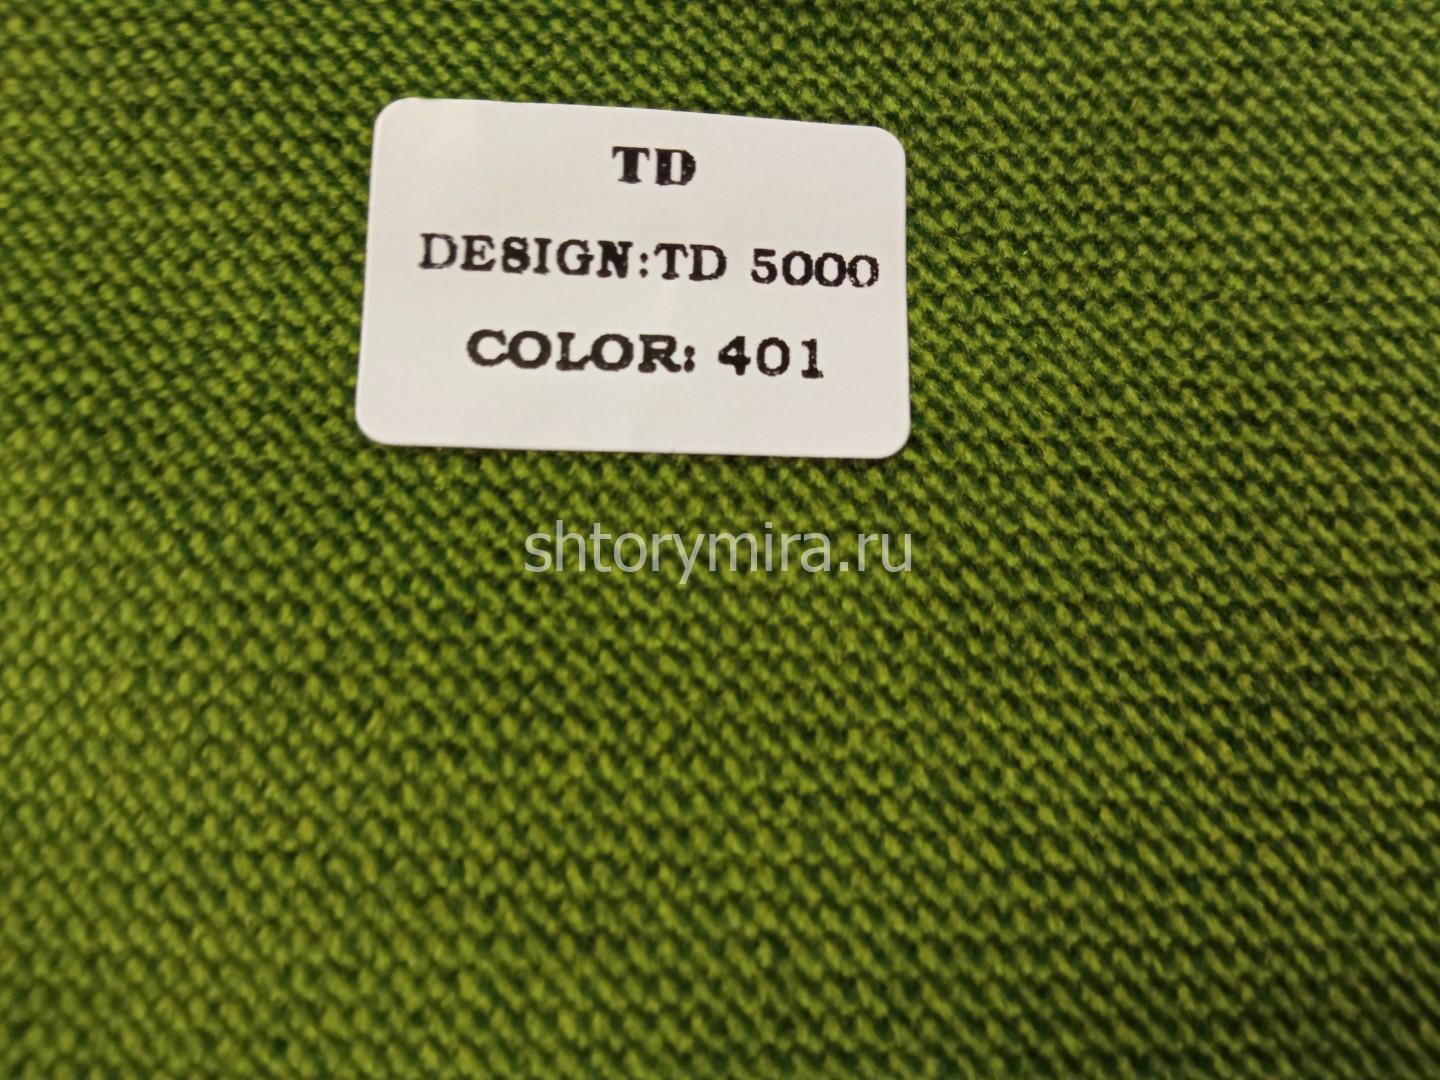 Ткань TD 5000-401 Rof